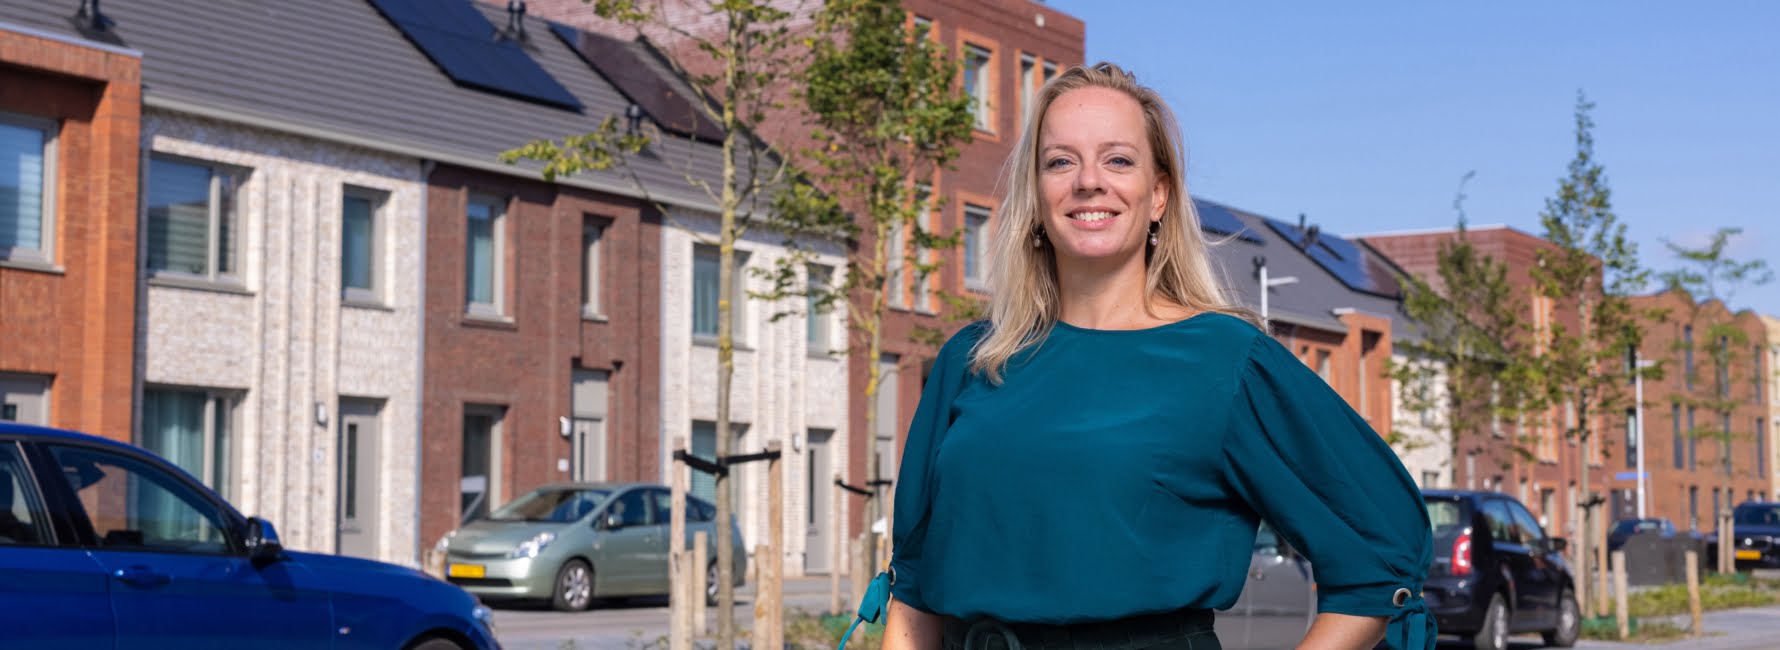 projectmanager Liesbeth op de foto in straat in Utrecht